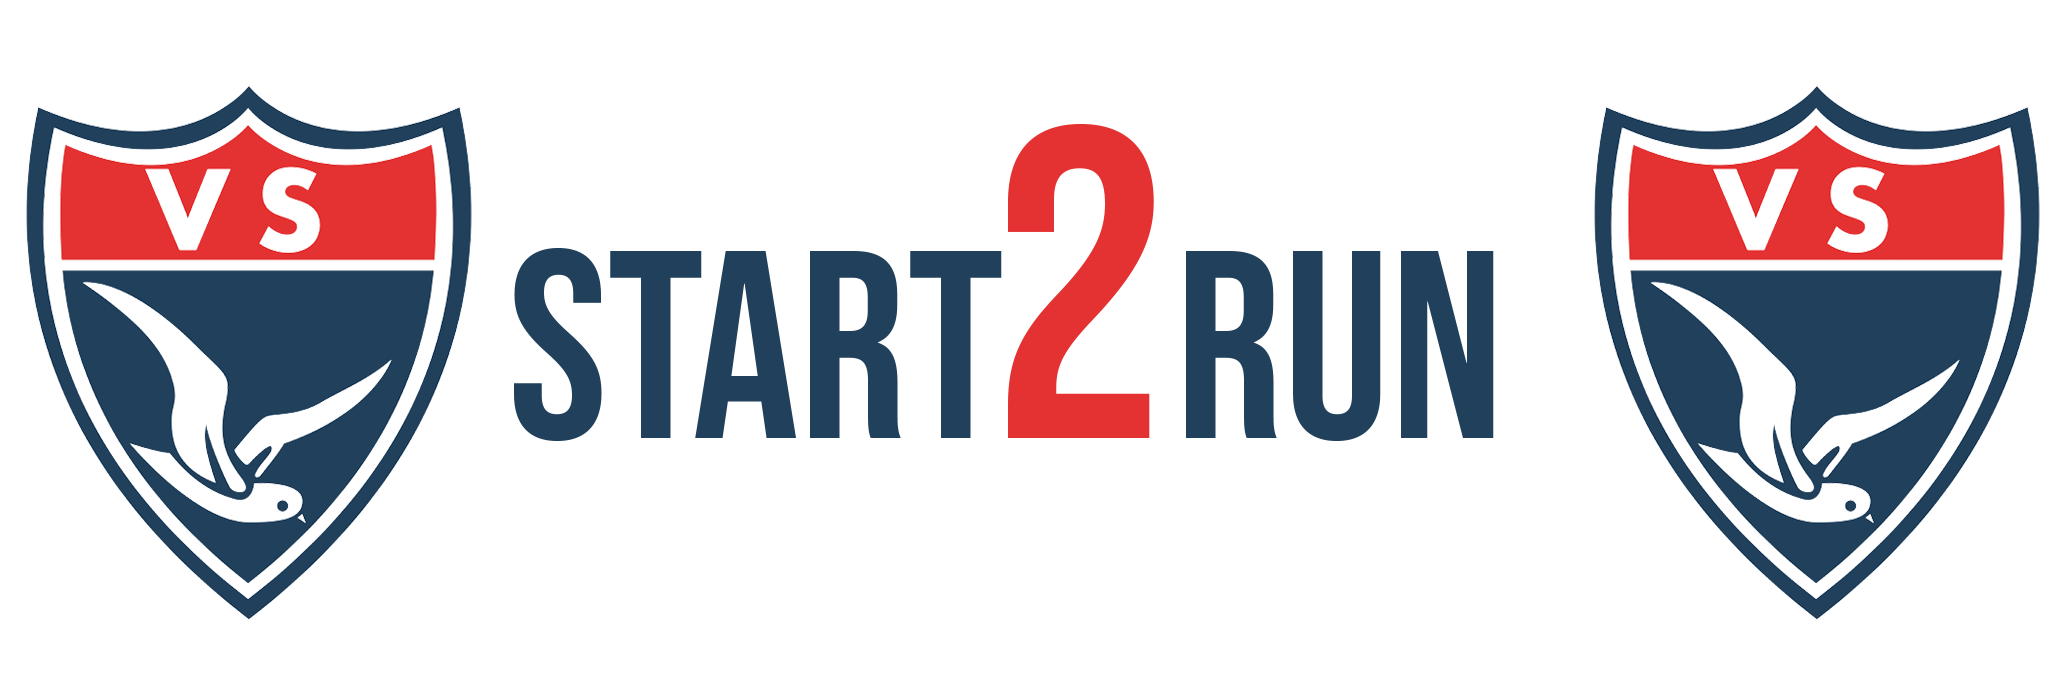 start2run_logo_website